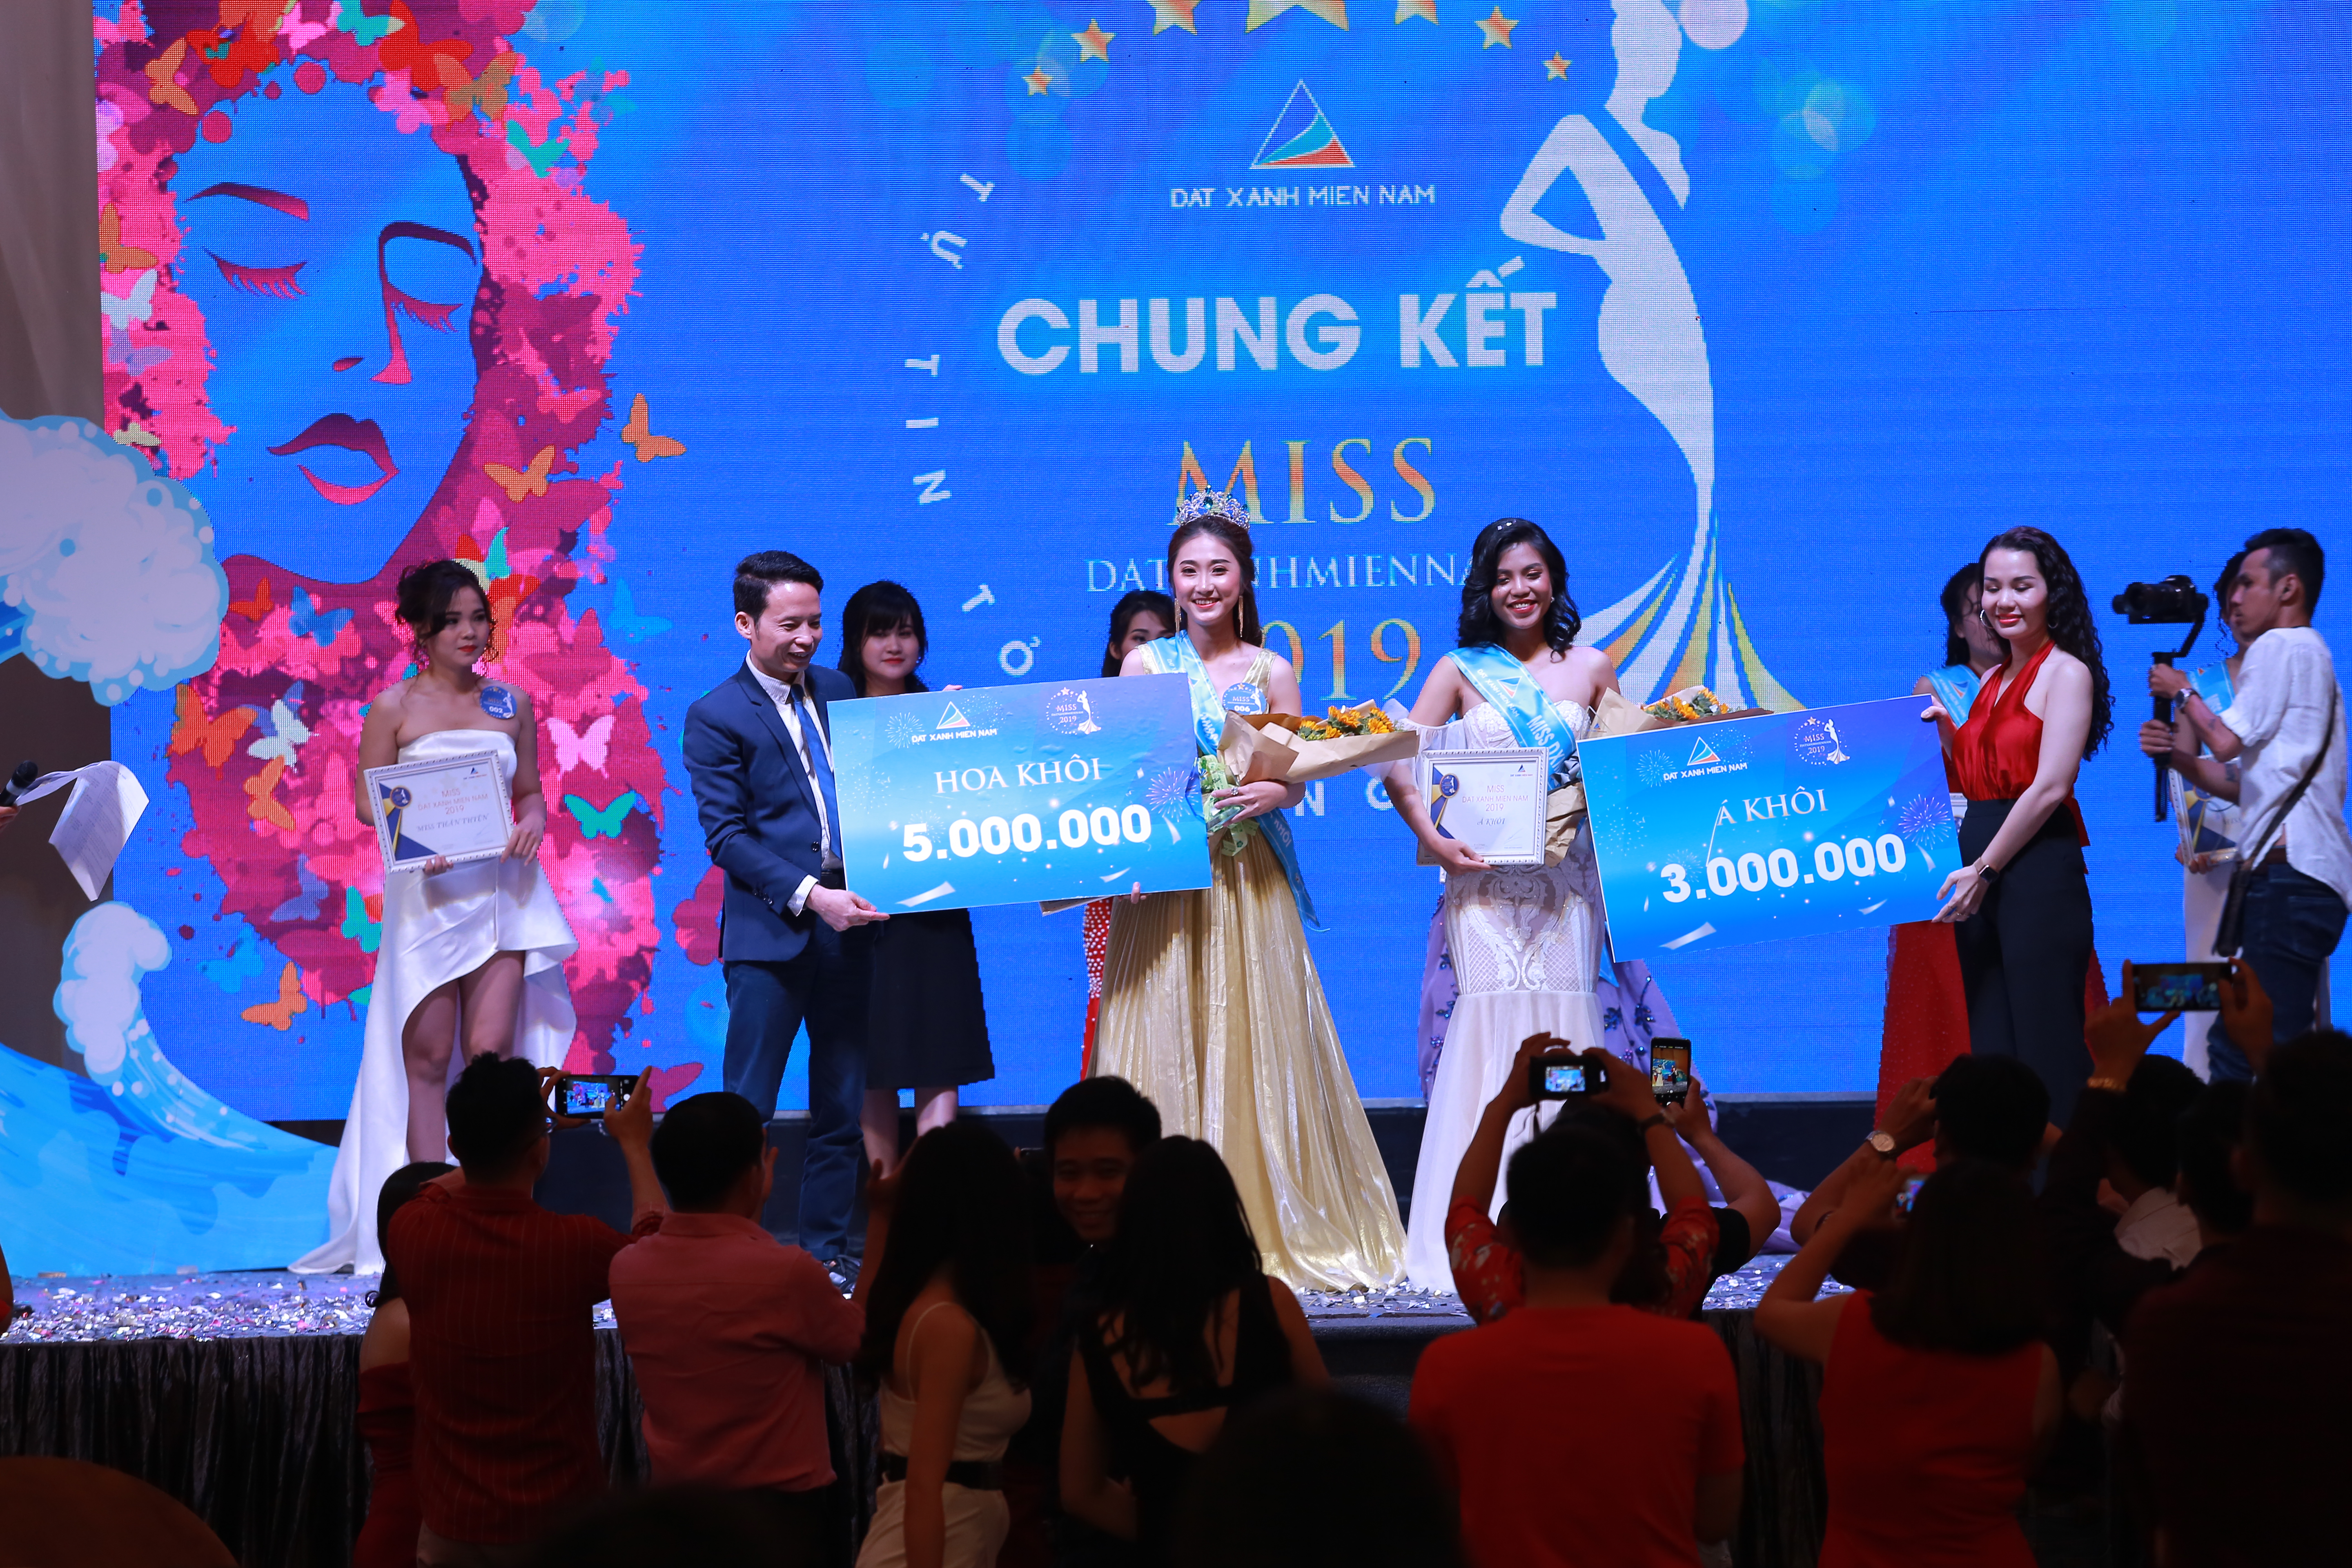 Đại diện công ty trao phần thưởng cho những thí sinh đạt giải cao trong Miss ĐXMN 2018